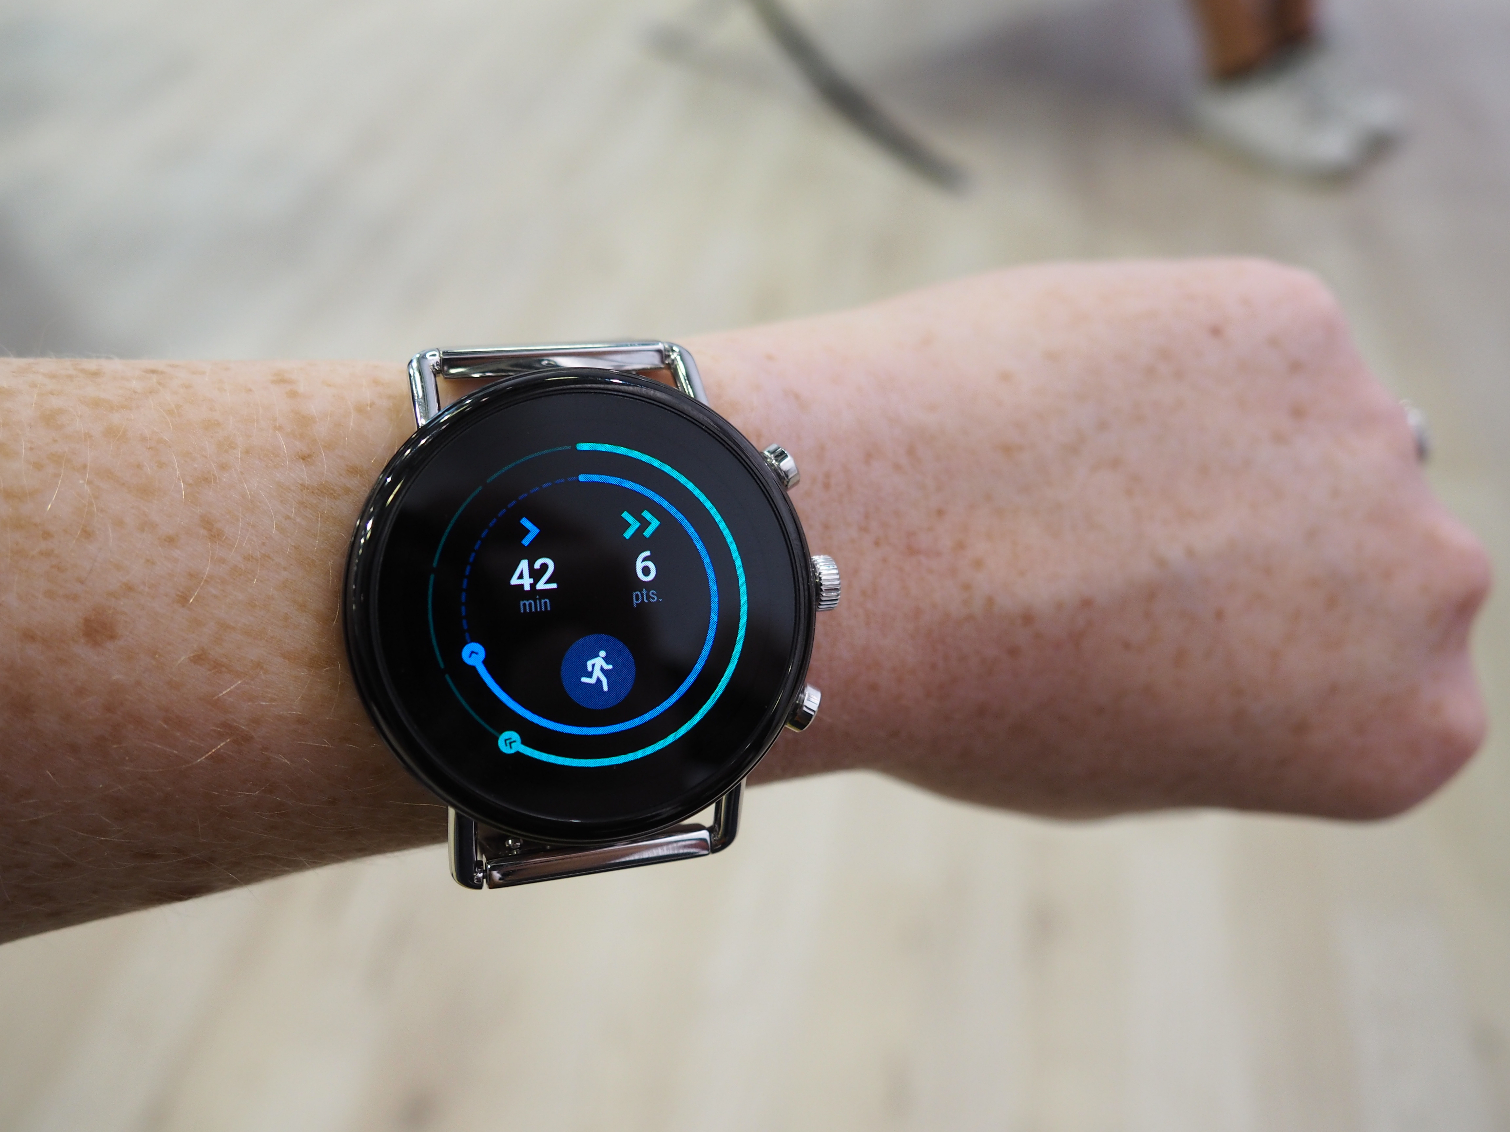 ในปีนี้ Google จะไม่มีการเปิดตัว Pixel Watch นาฬิกาอัจฉริยะรุ่นใหม่